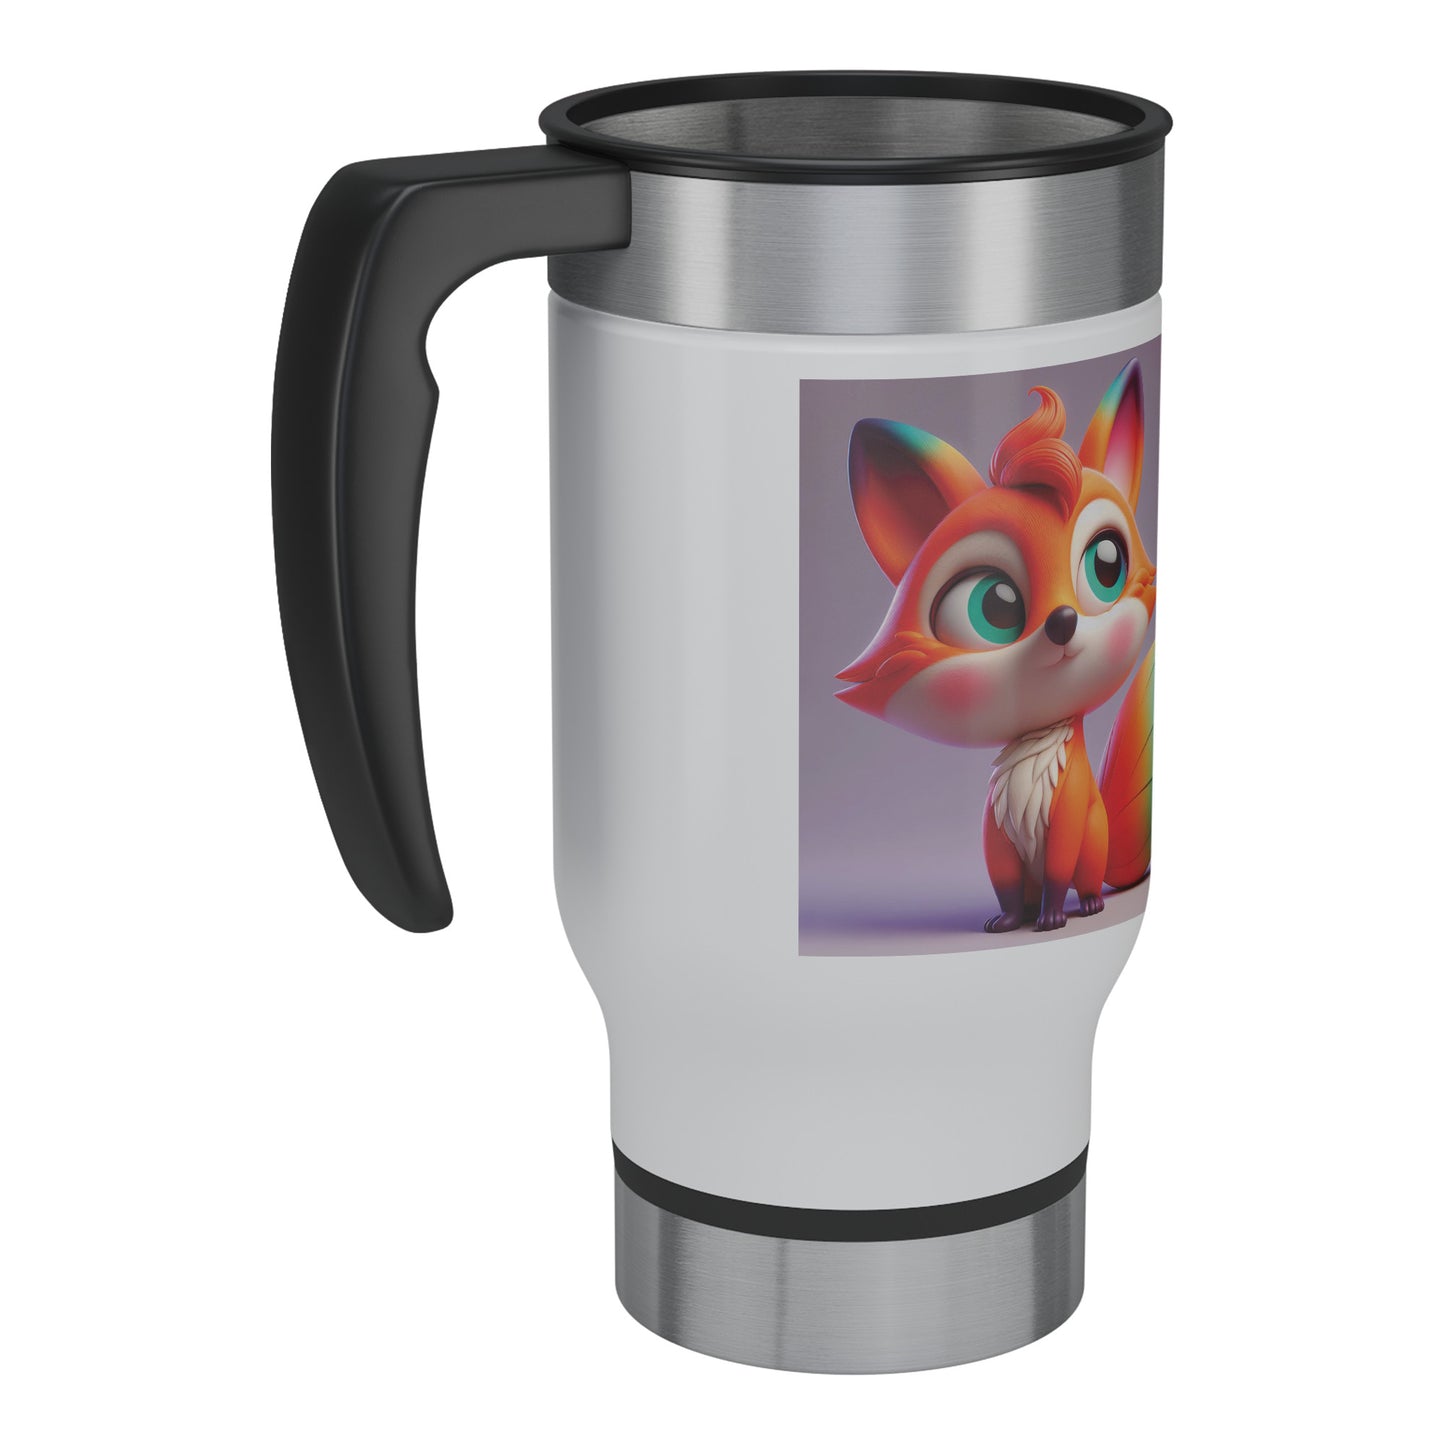 Cute & Adorable Mammals - 14oz Travel Mug - Fox #3